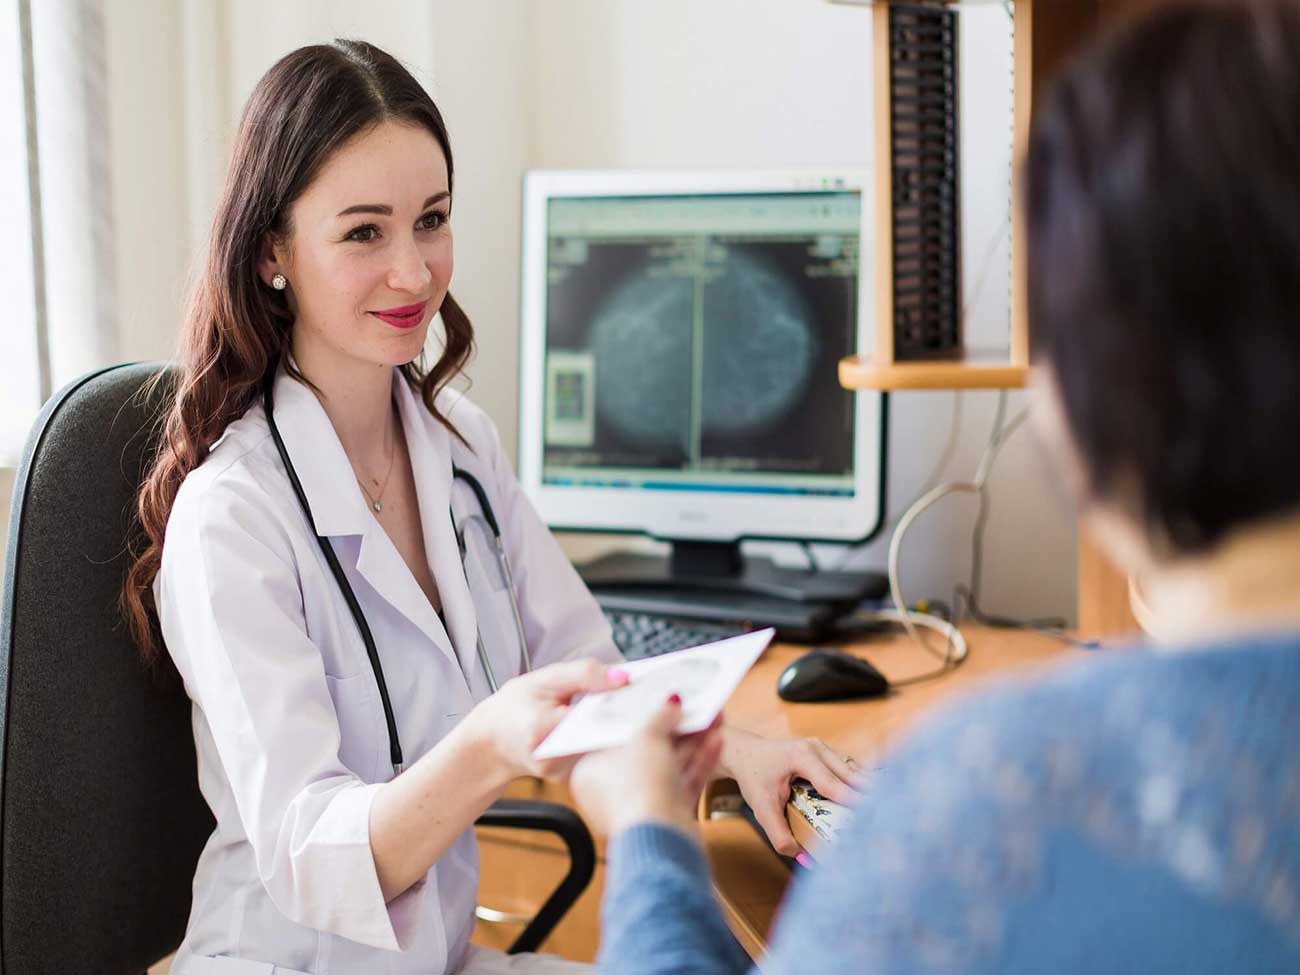 دقت بالا از مزایای سونوگرافی تشخیص سرطان سینه است